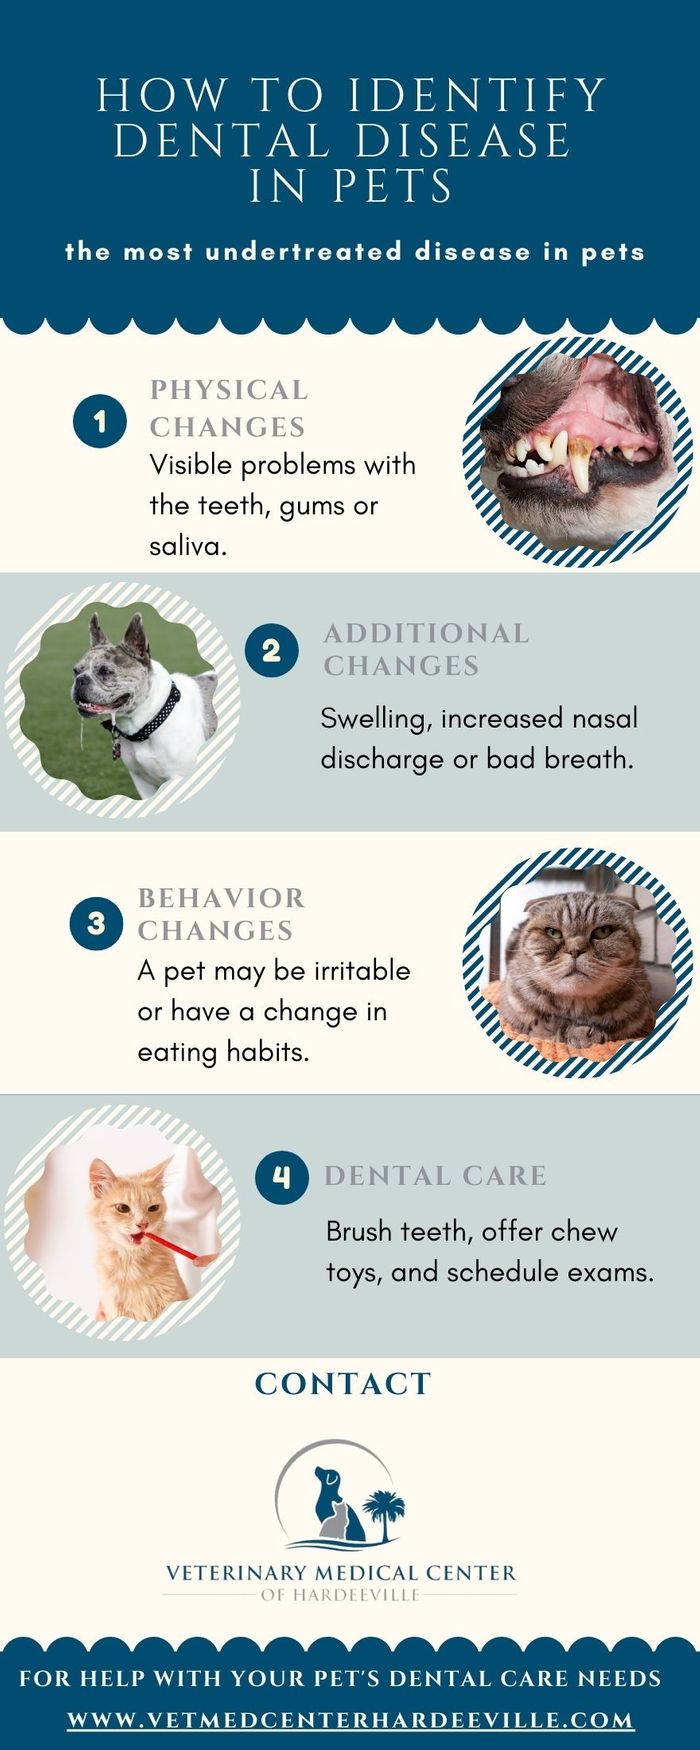 M32826-How to Identify Dental Disease in Pets (2).jpg